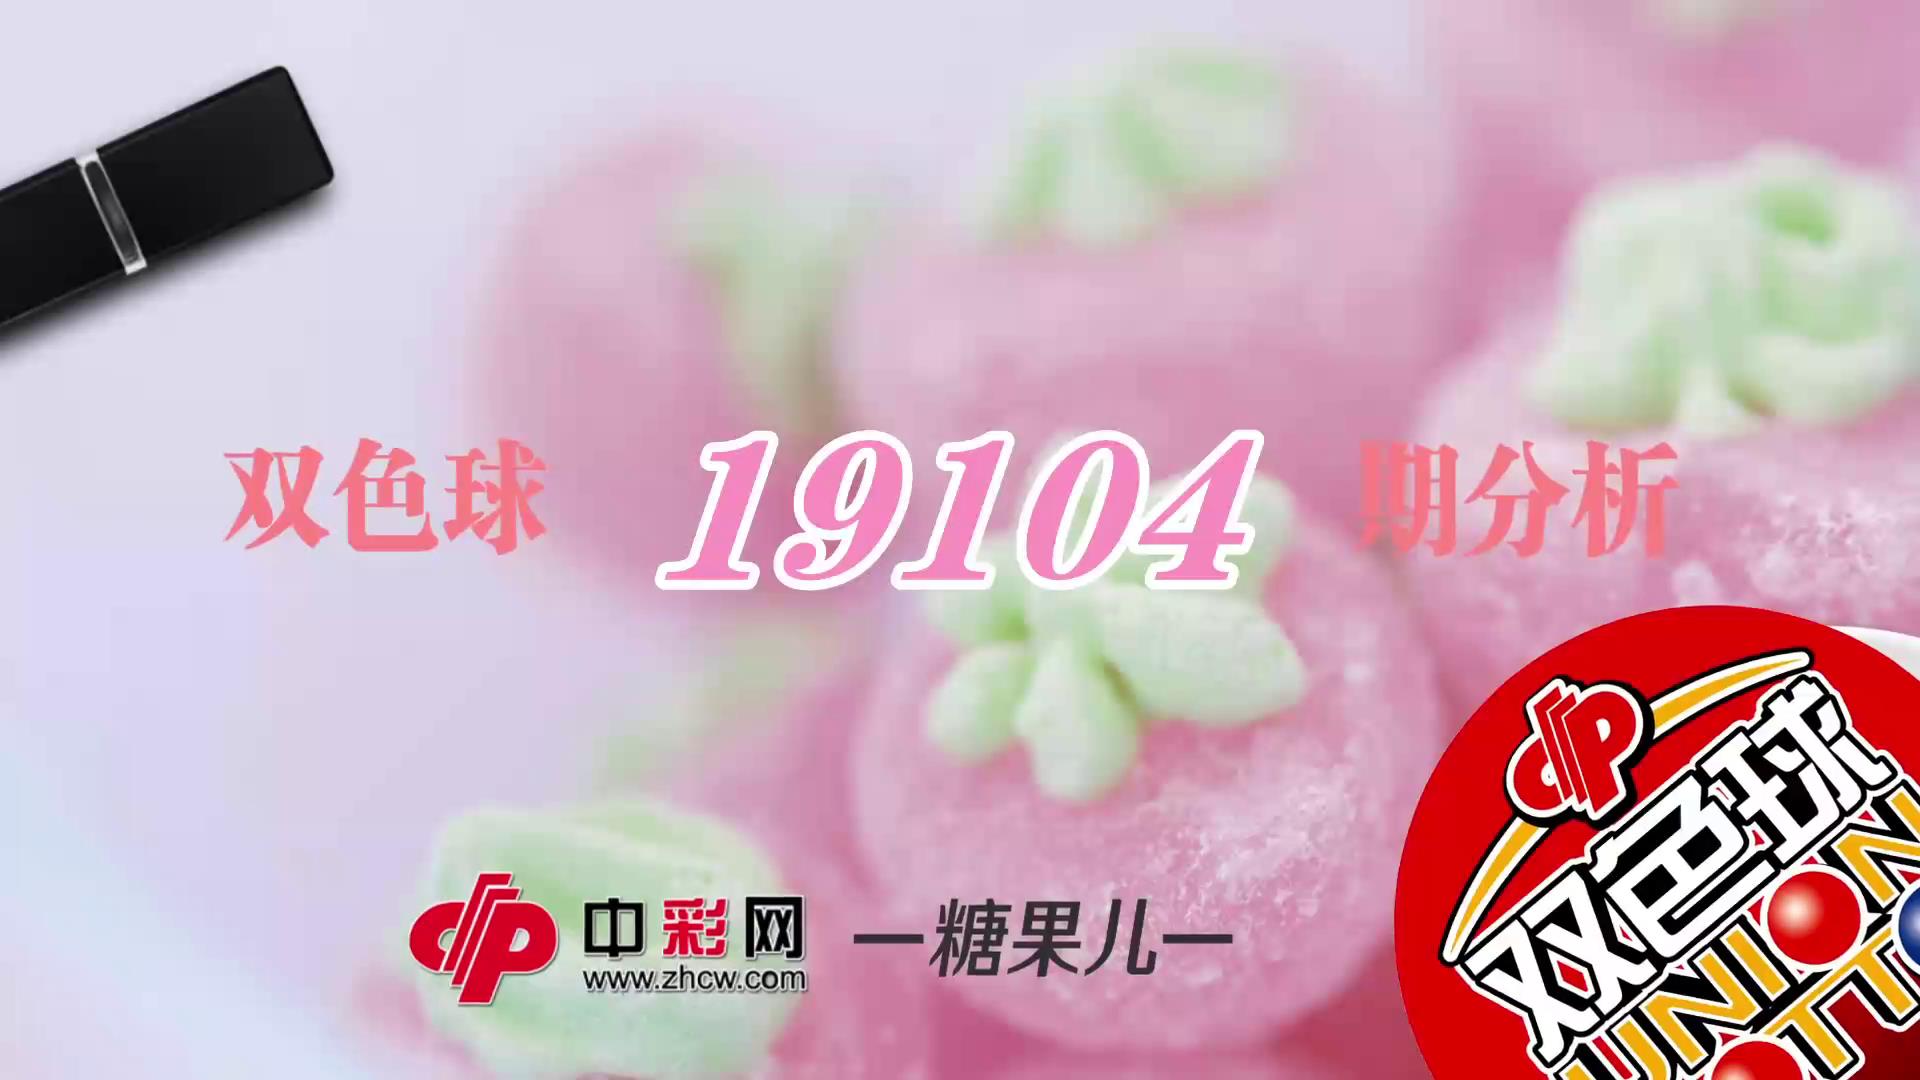 【中彩视频】糖果儿双色球第19104期